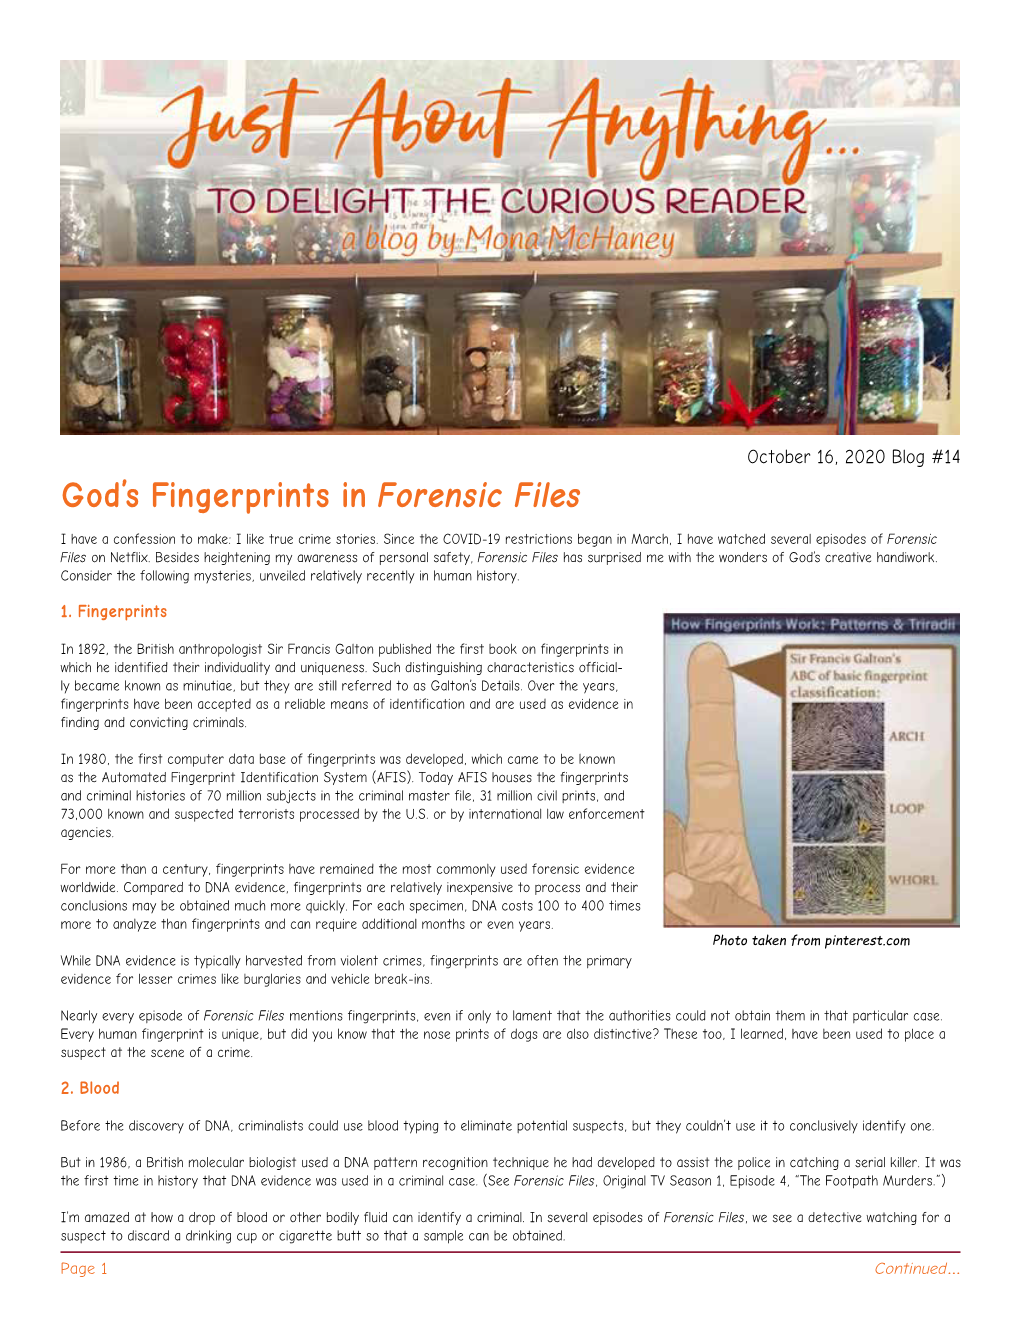 God's Fingerprints in Forensic Files